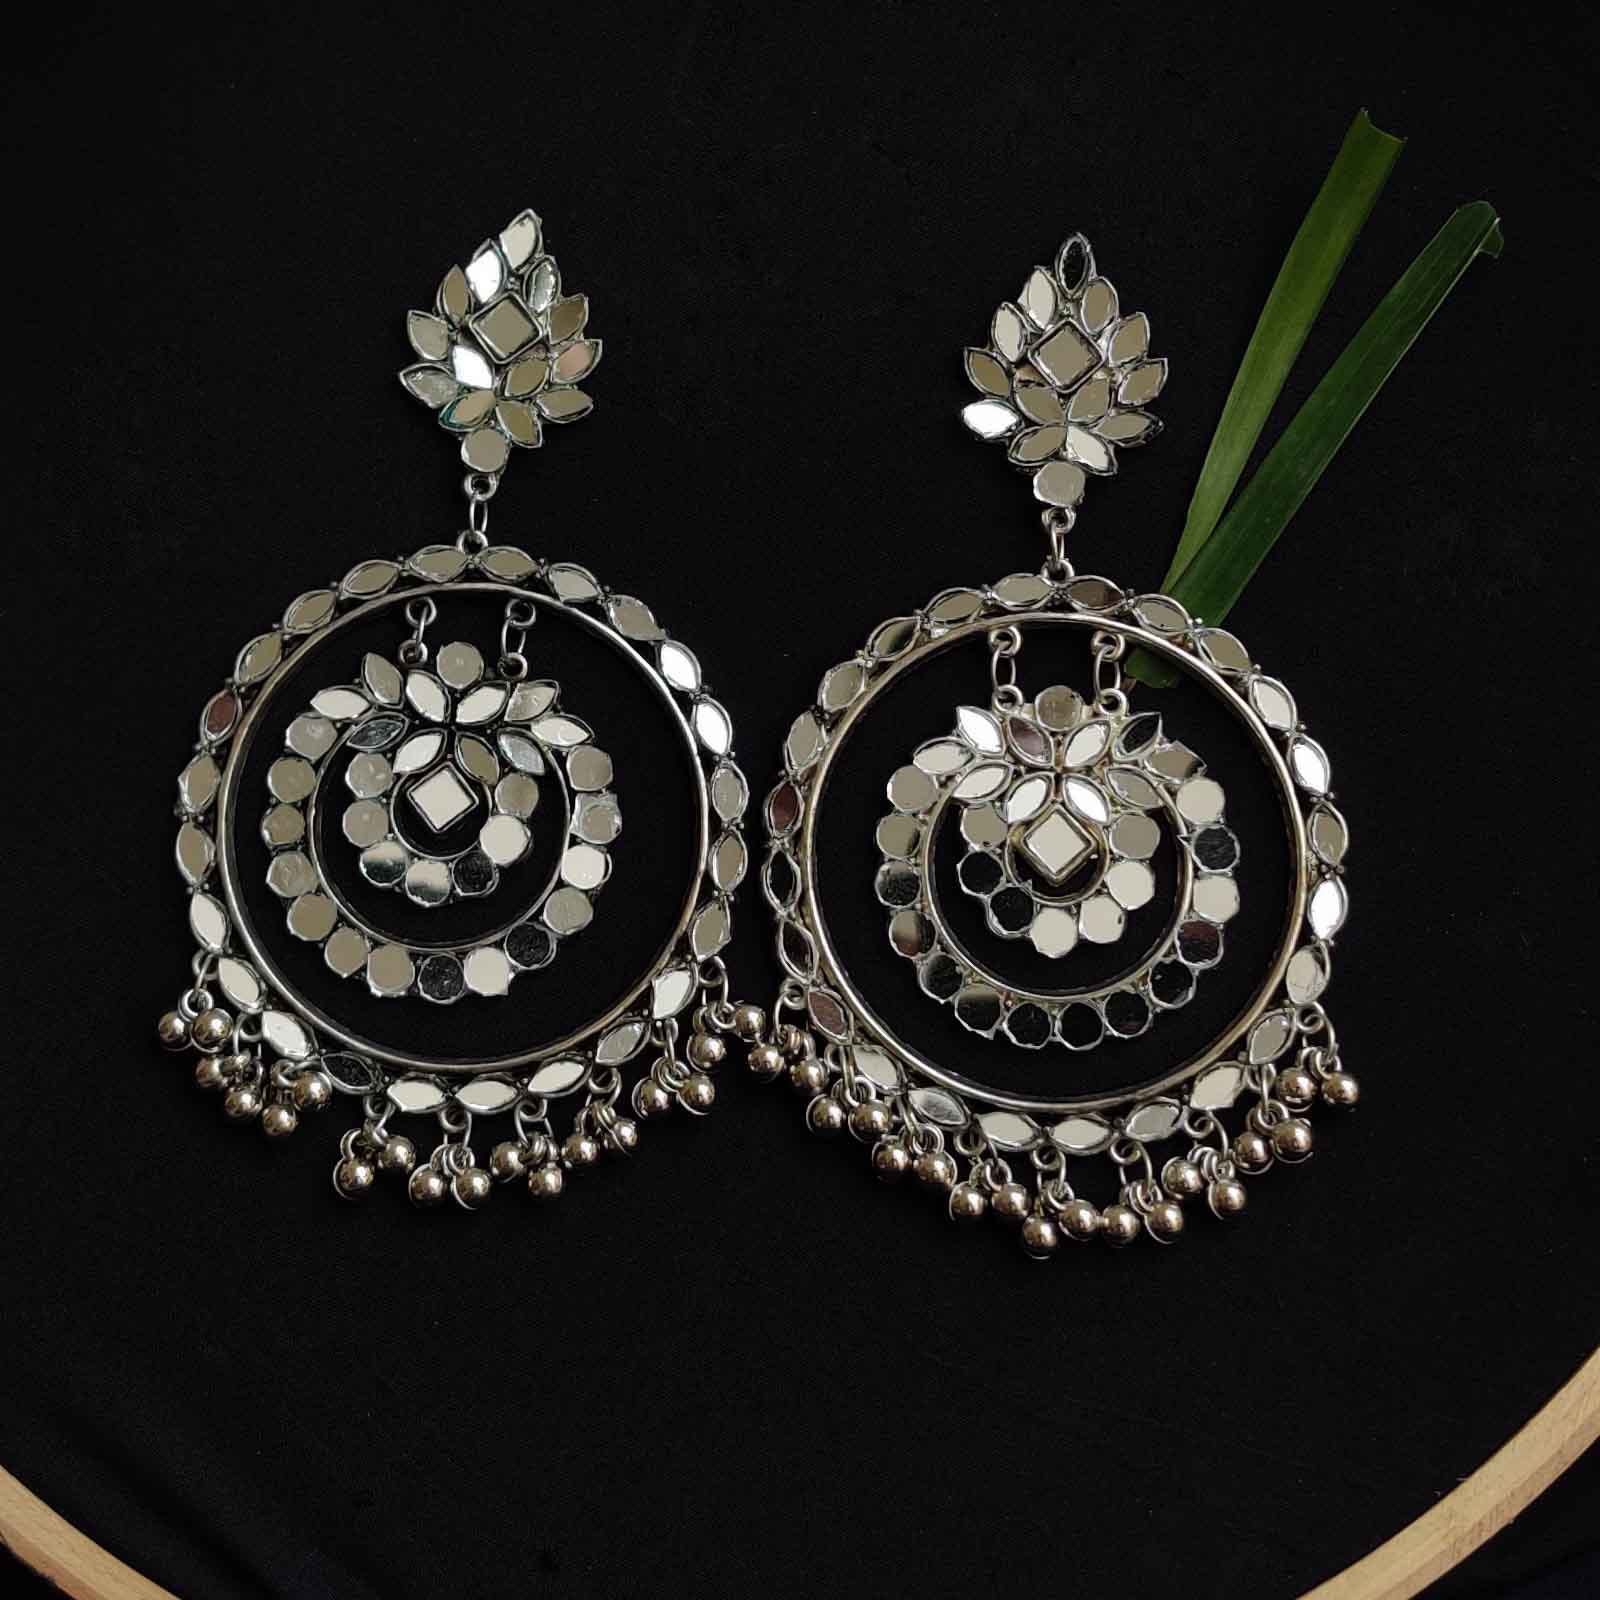 Buy Online Stud earrings, German silver stud earrings, oxidised studs stone  studs, Indian ethnic earrin - Zifiti.com 1078945